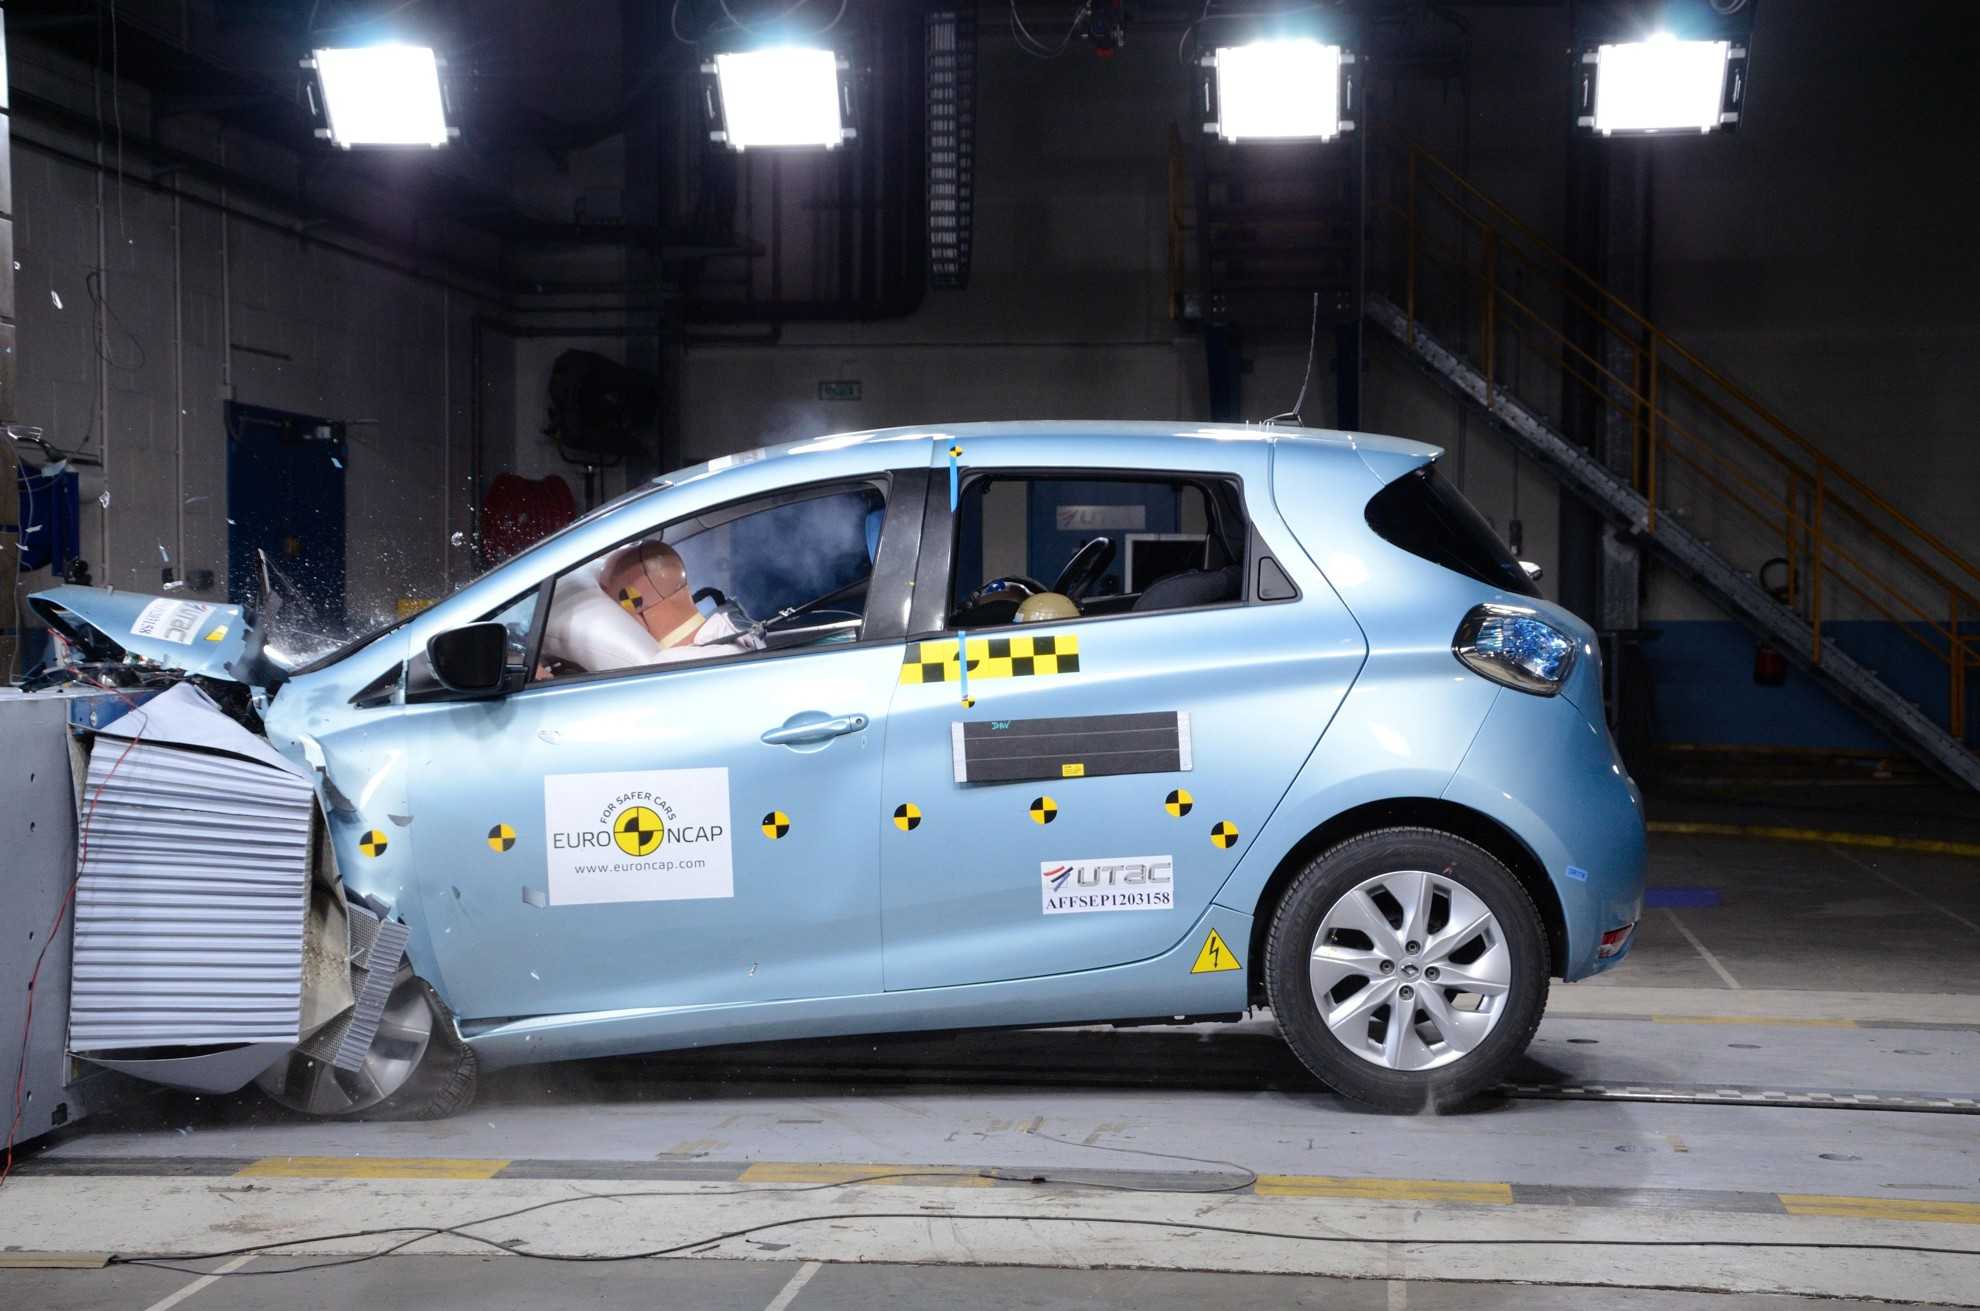 Как правильно оценить безопасность машины по рейтингу euro ncap?